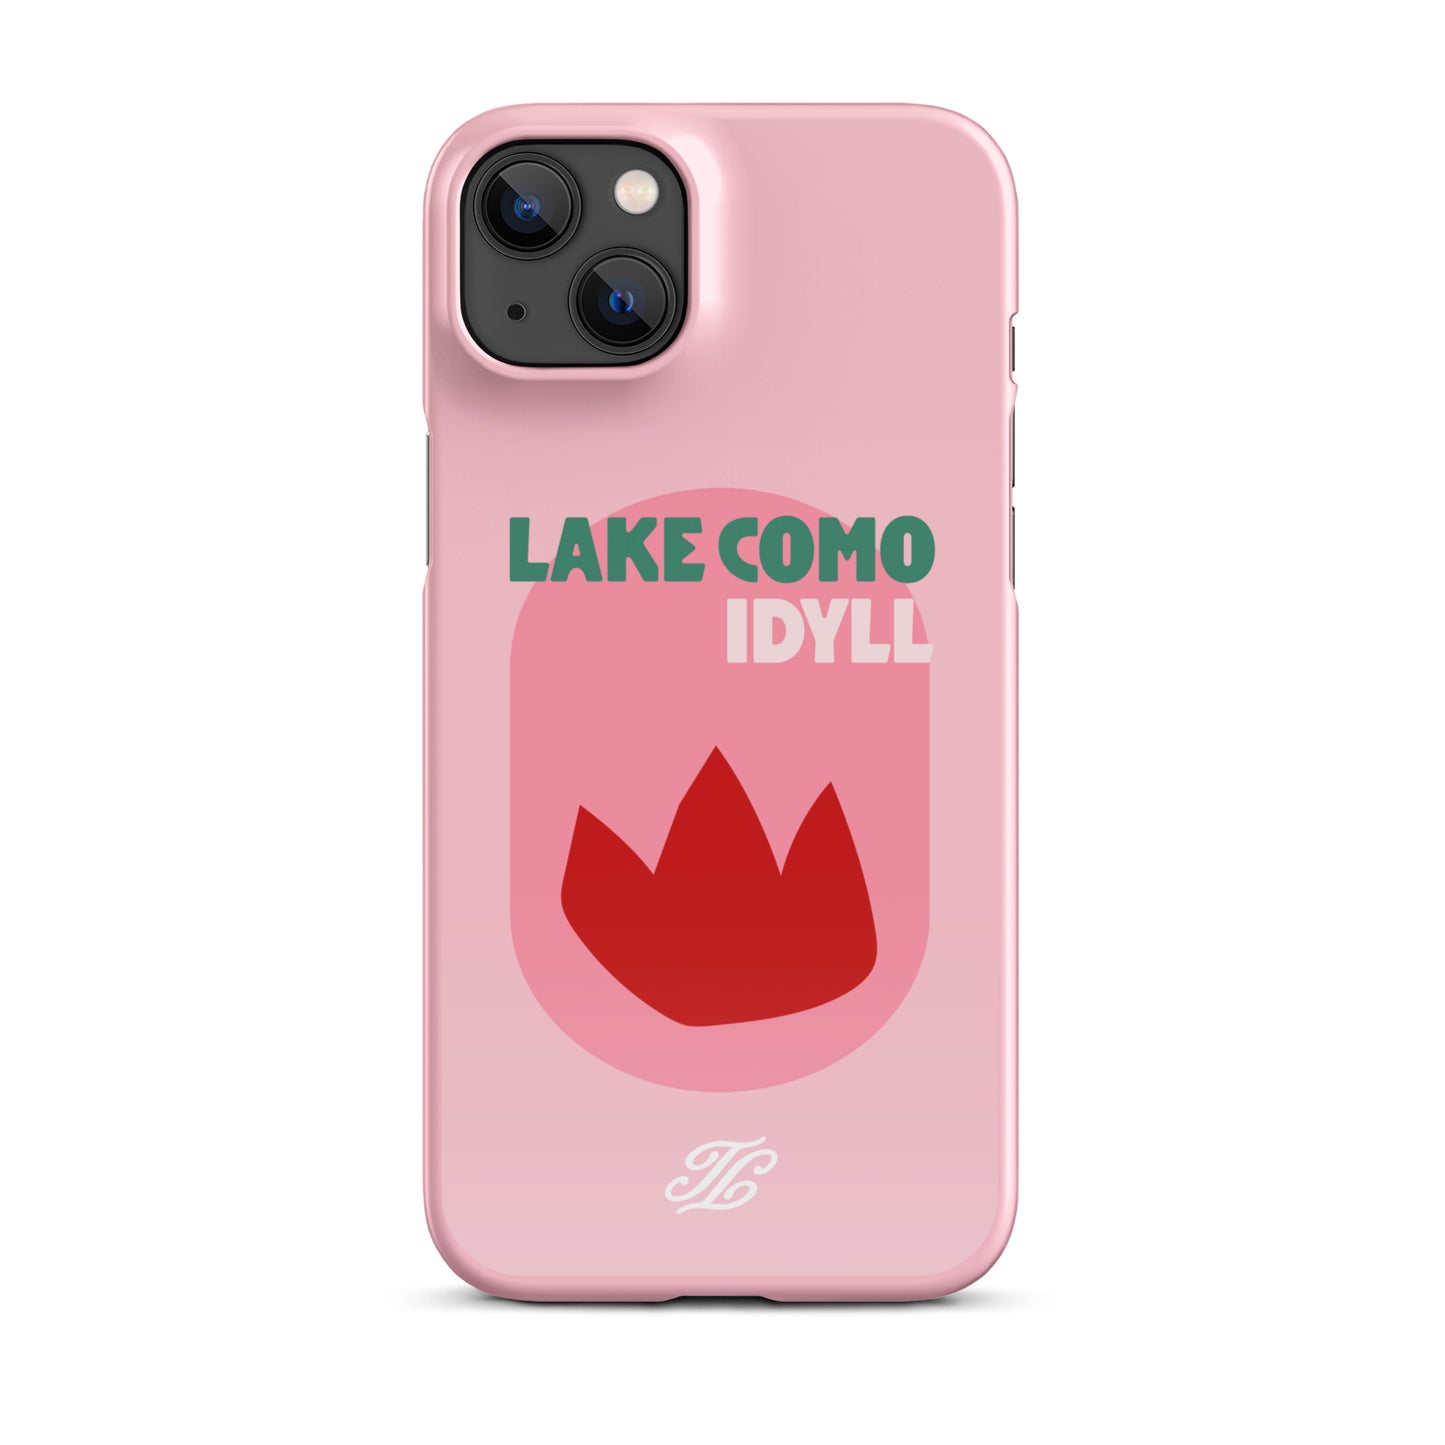 Lake Como Italy iPhone® case